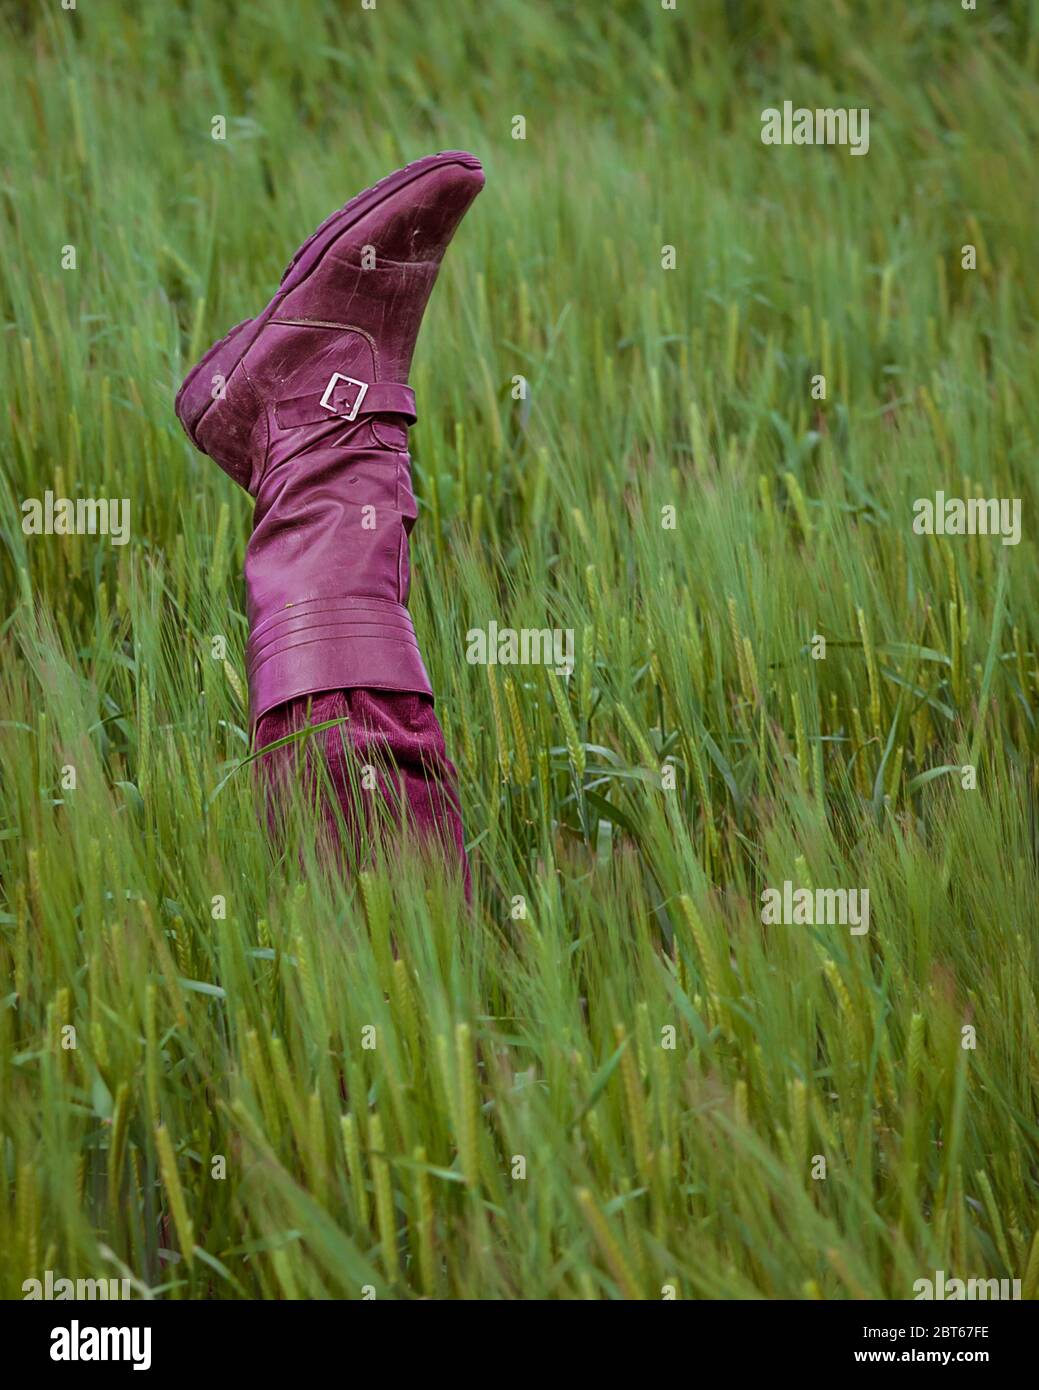 Une émotion insouciante et contentée, avec une chaussure pour femme qui colle d'un champ de blé, région de Swellendam, province du Cap-Occidental, Afrique du Sud. Banque D'Images